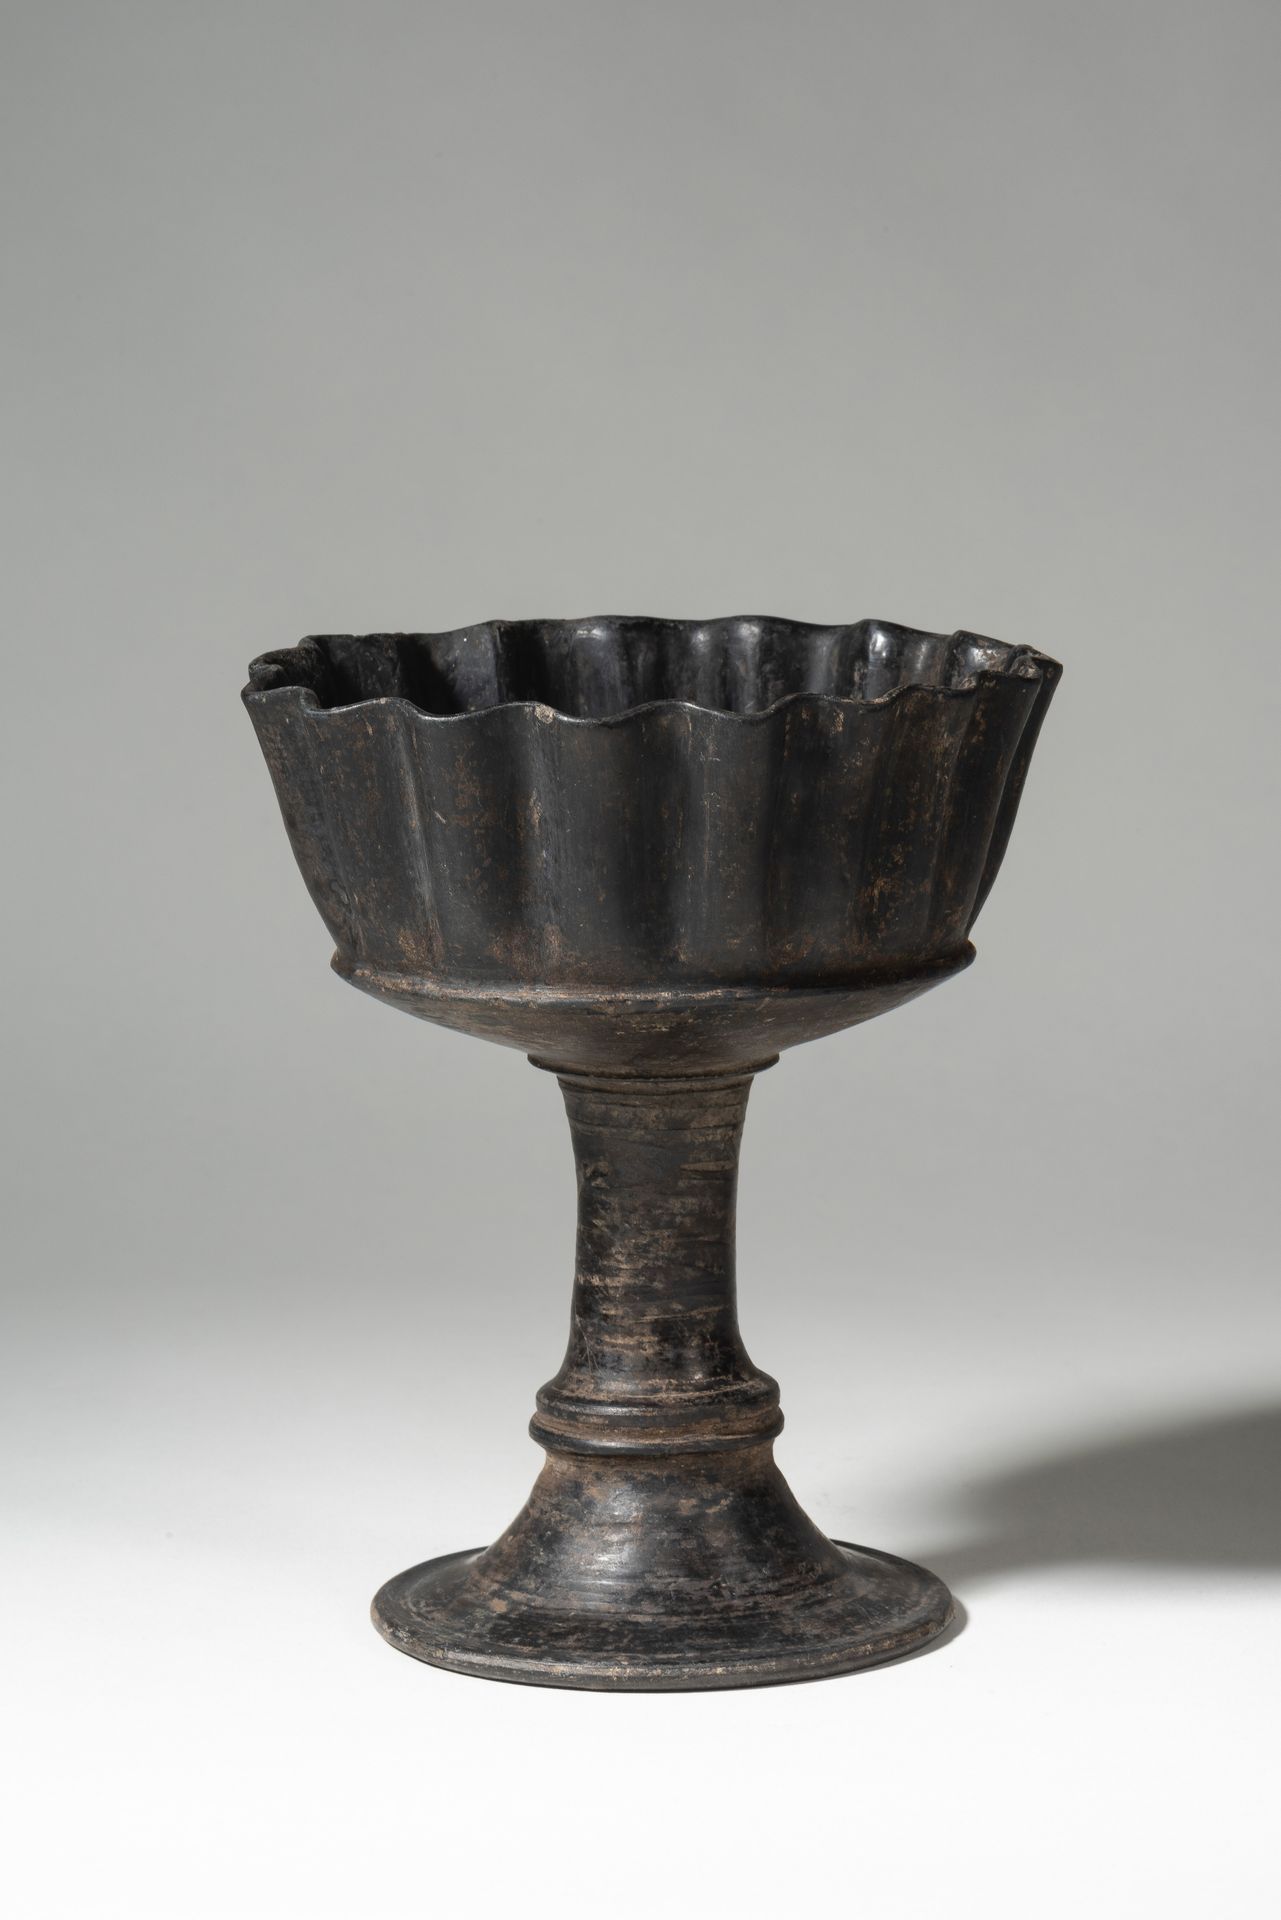 Coupe caliciforme à paroi cannelée 
公元前6世纪的伊特鲁里亚人





有凹槽壁的Caliciform碗。不常见的形状。
&hellip;